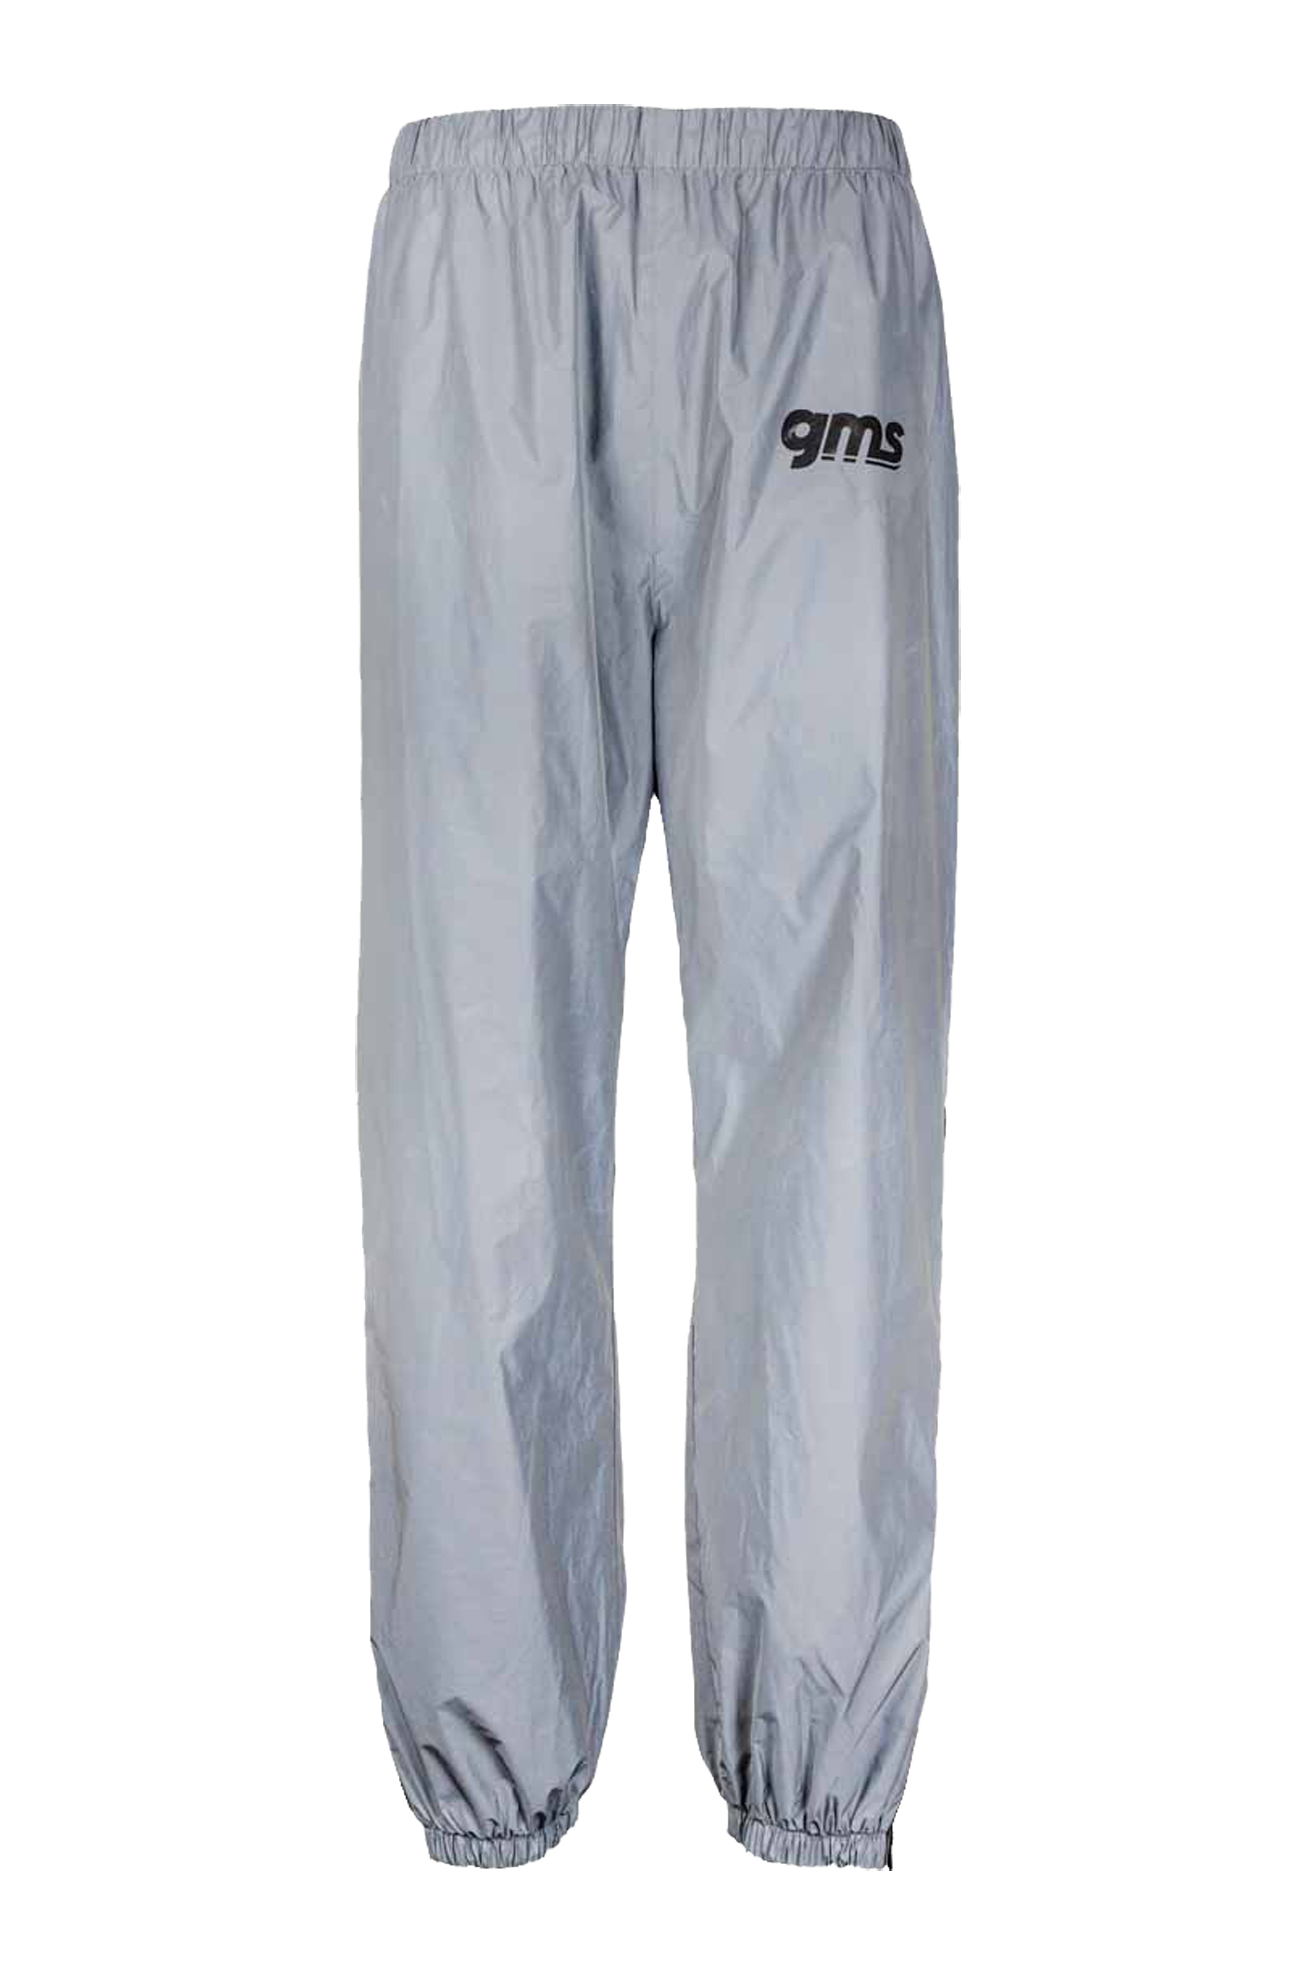 GMS Pantalones Impermeables  Douglas Lux Gris Reflectante